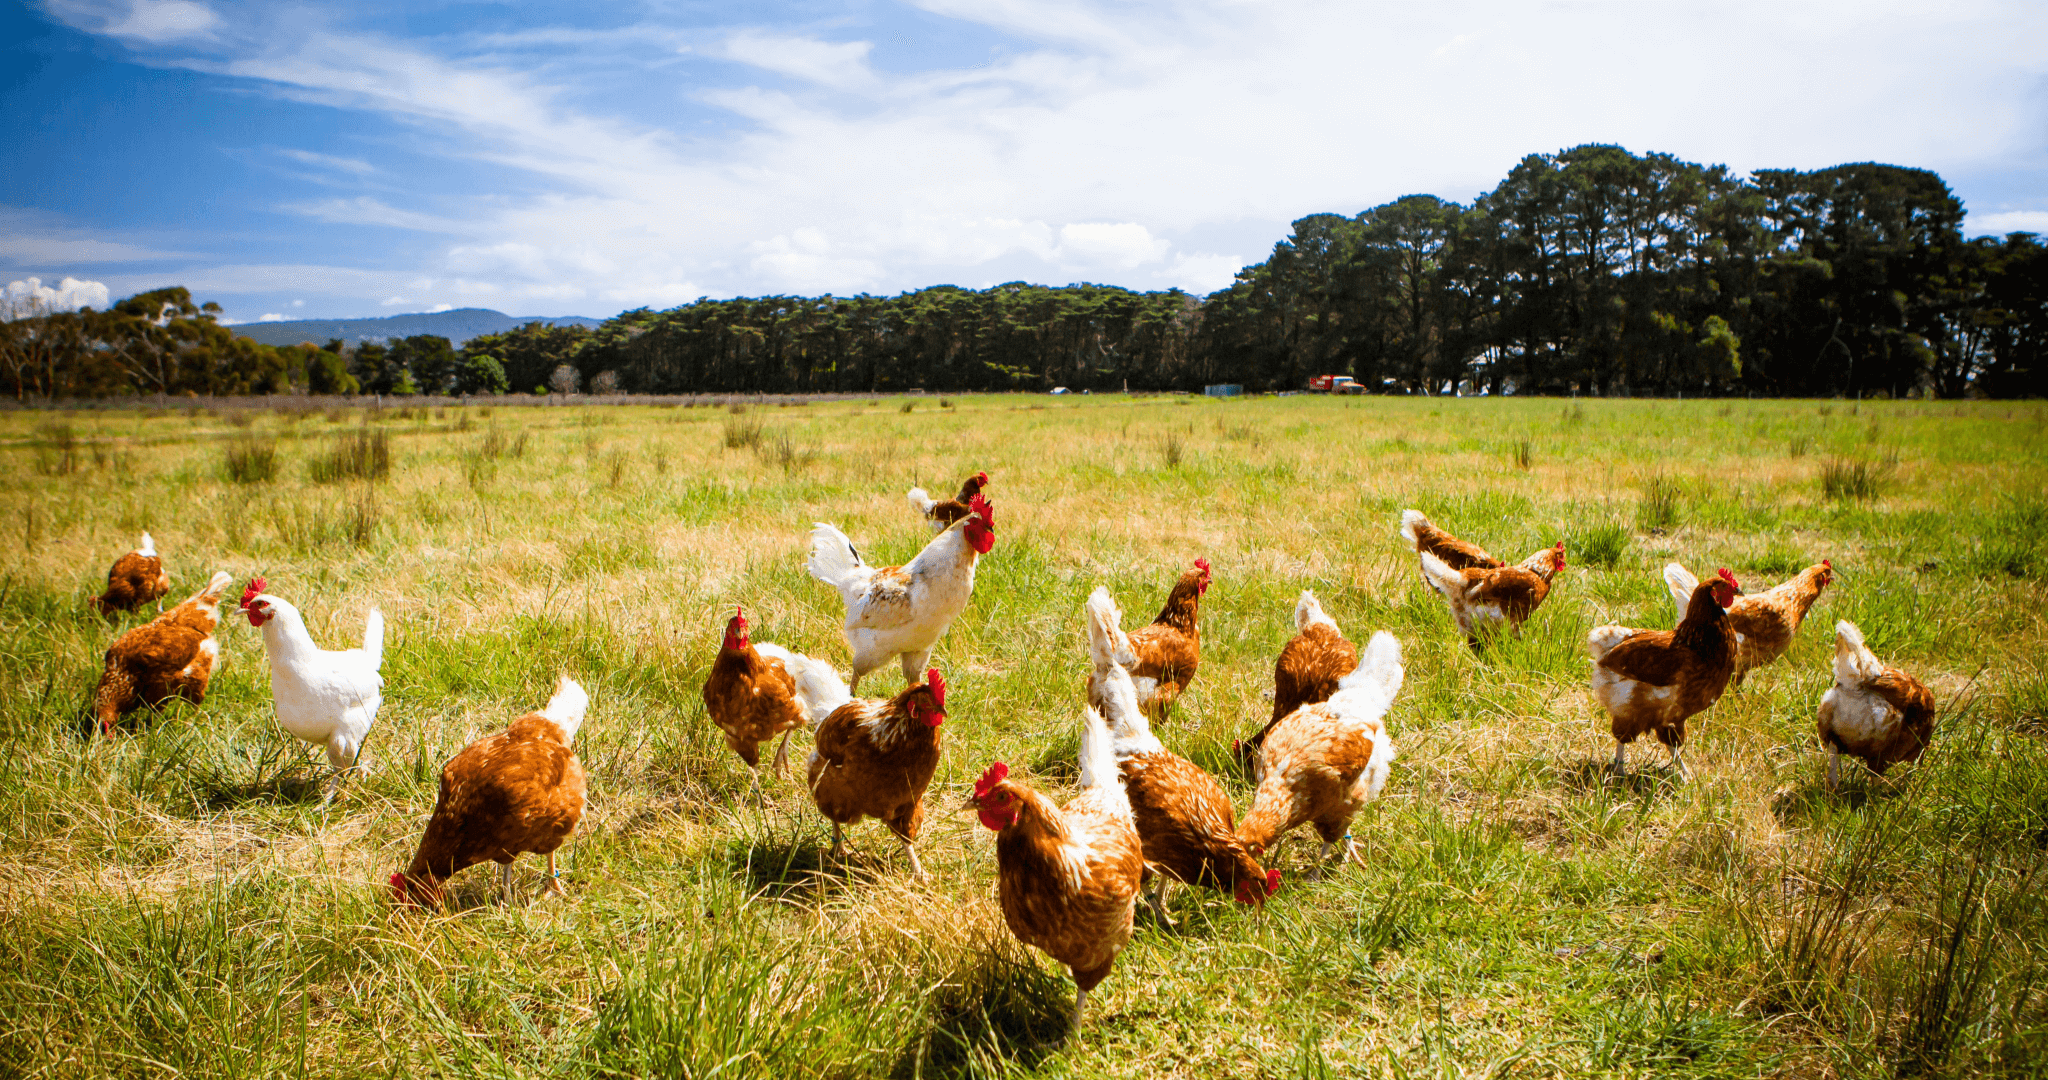 chickens grazing on grassland